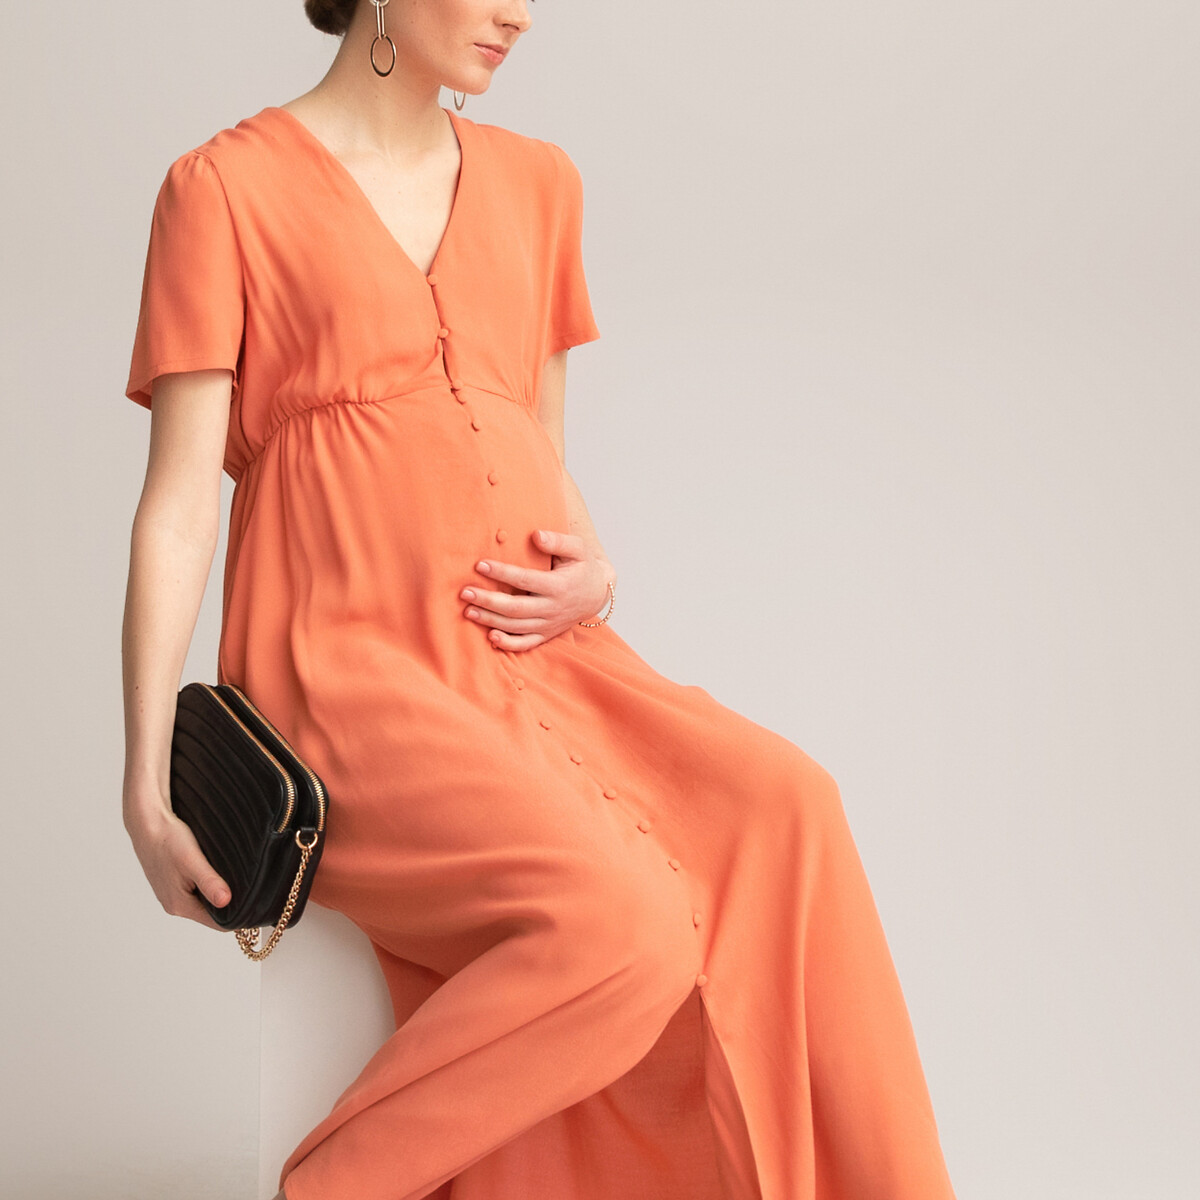 Платье LaRedoute Для периода беременности длинное вырез с короткими рукавами 36 (FR) - 42 (RUS) оранжевый, размер 36 (FR) - 42 (RUS) Для периода беременности длинное вырез с короткими рукавами 36 (FR) - 42 (RUS) оранжевый - фото 2